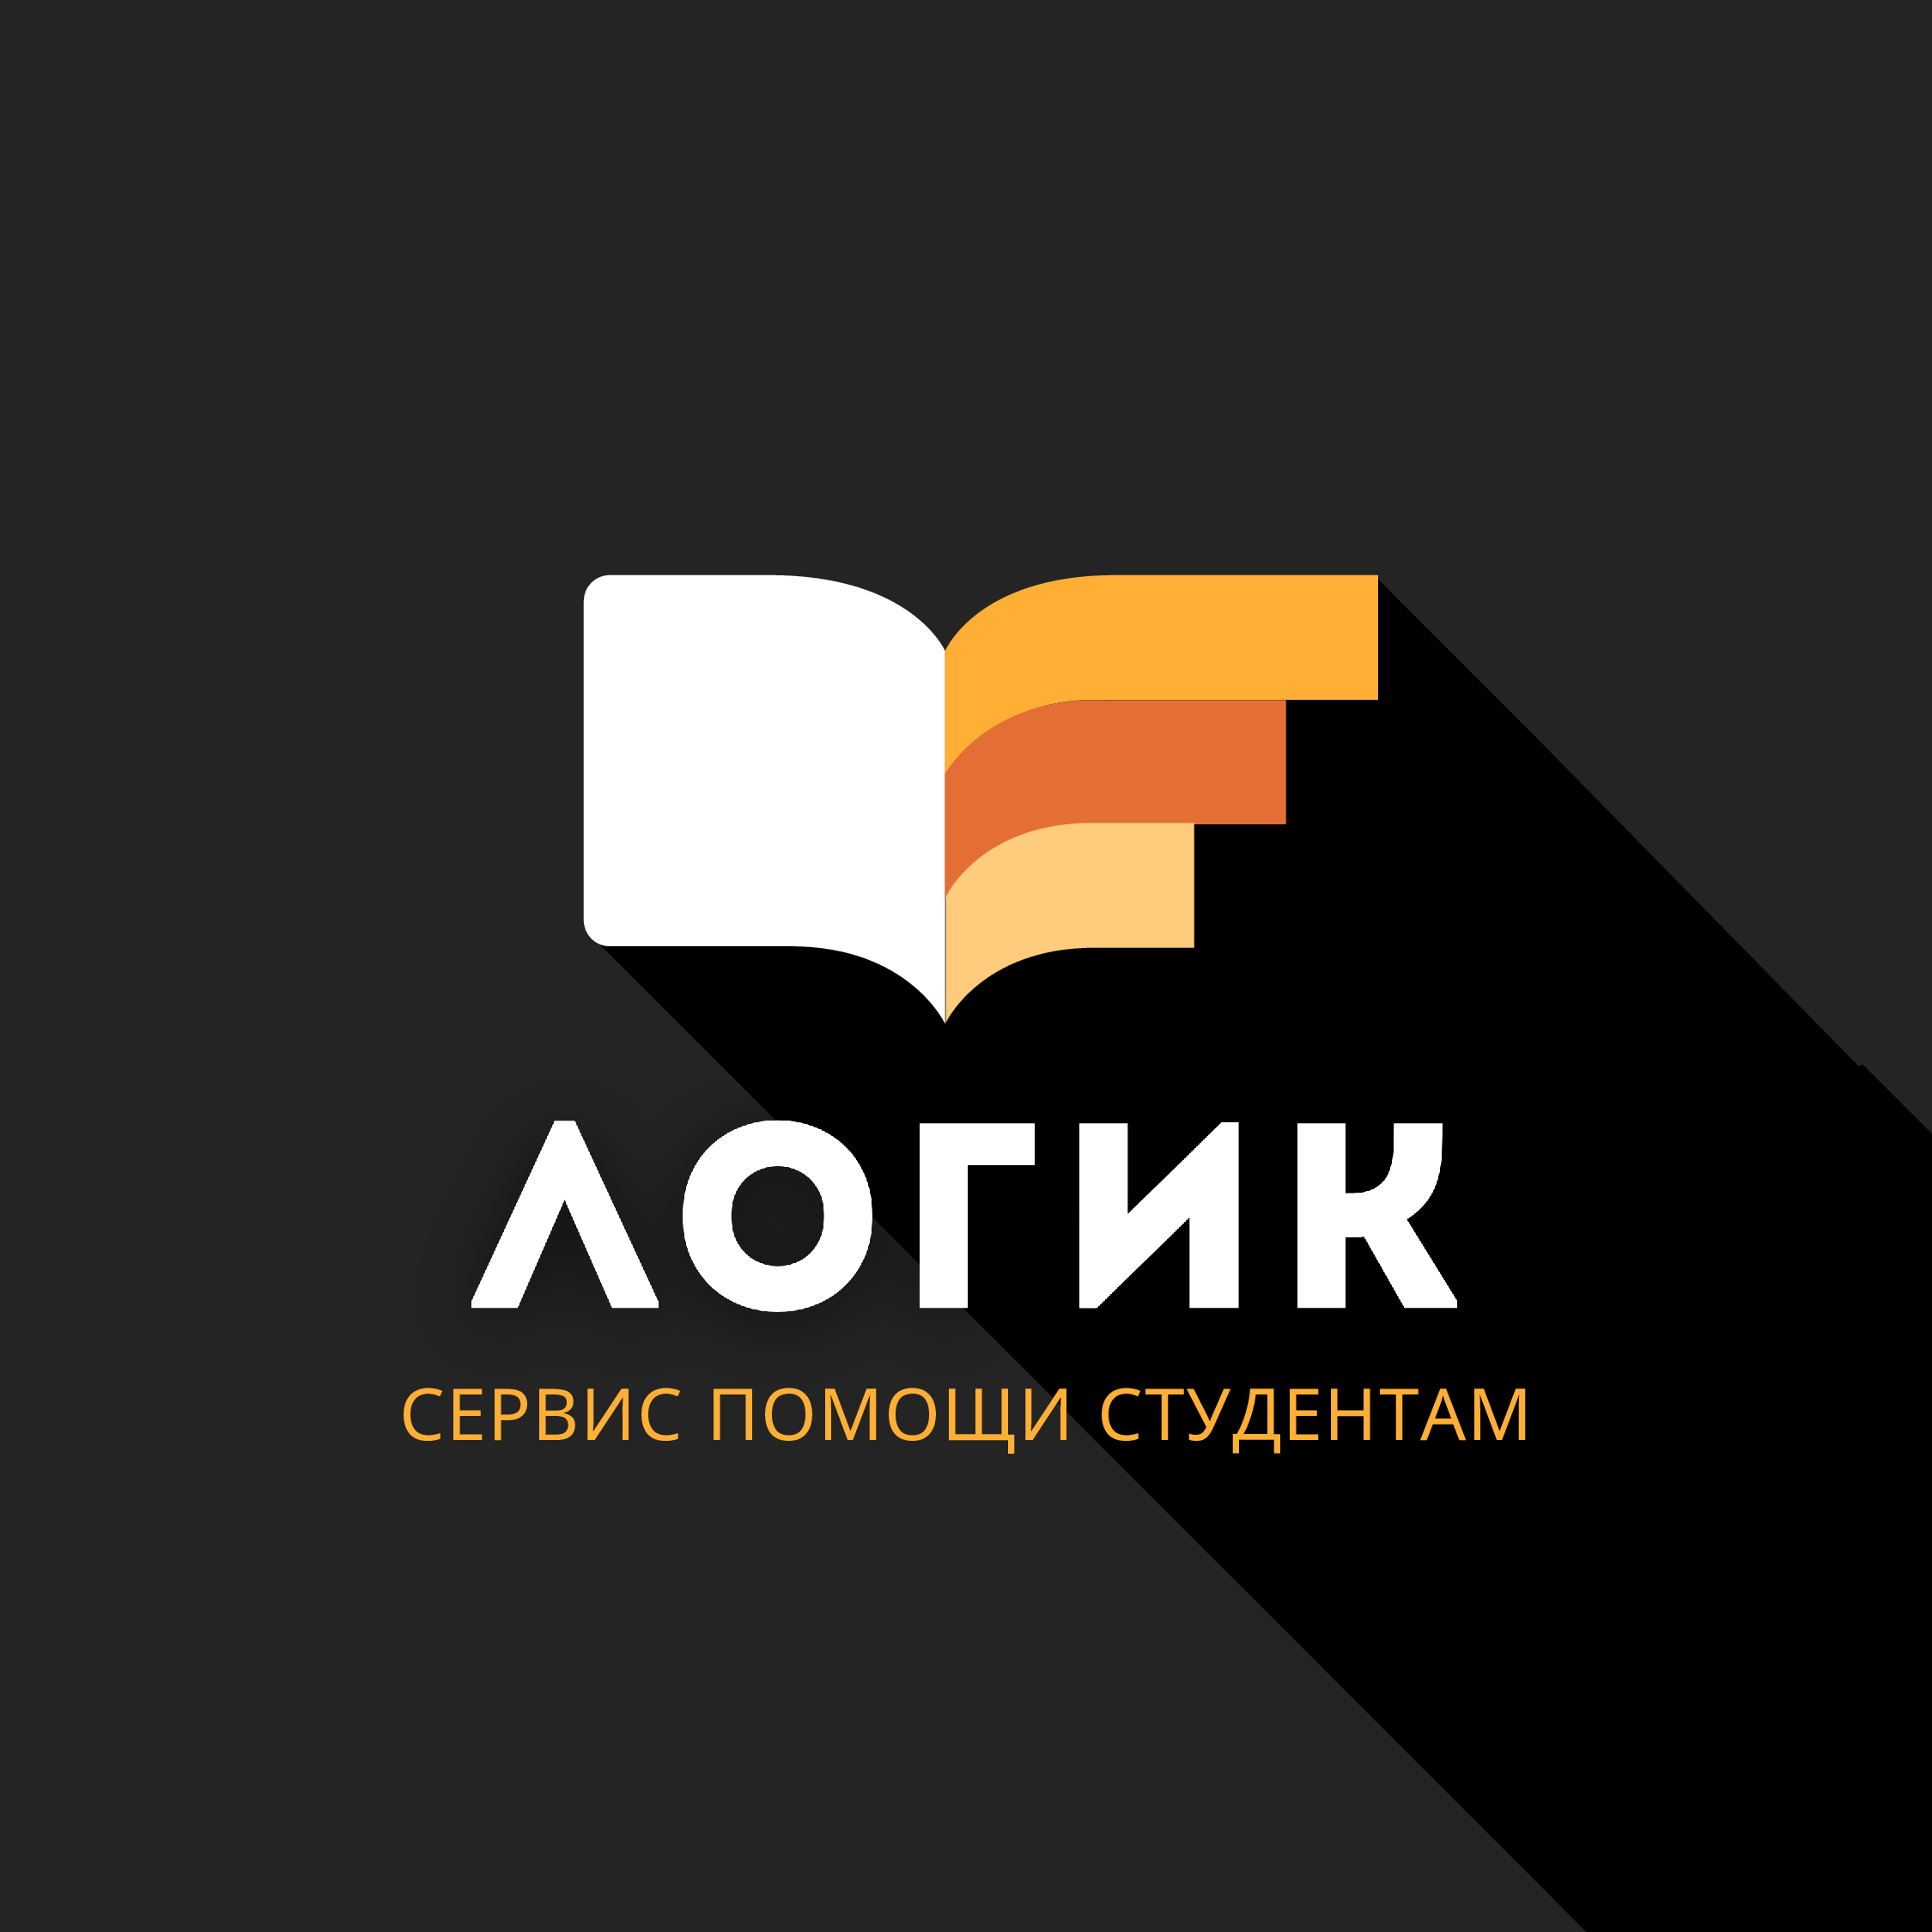 Логик — сервис помощи студентам и аспирантам в Красногорске